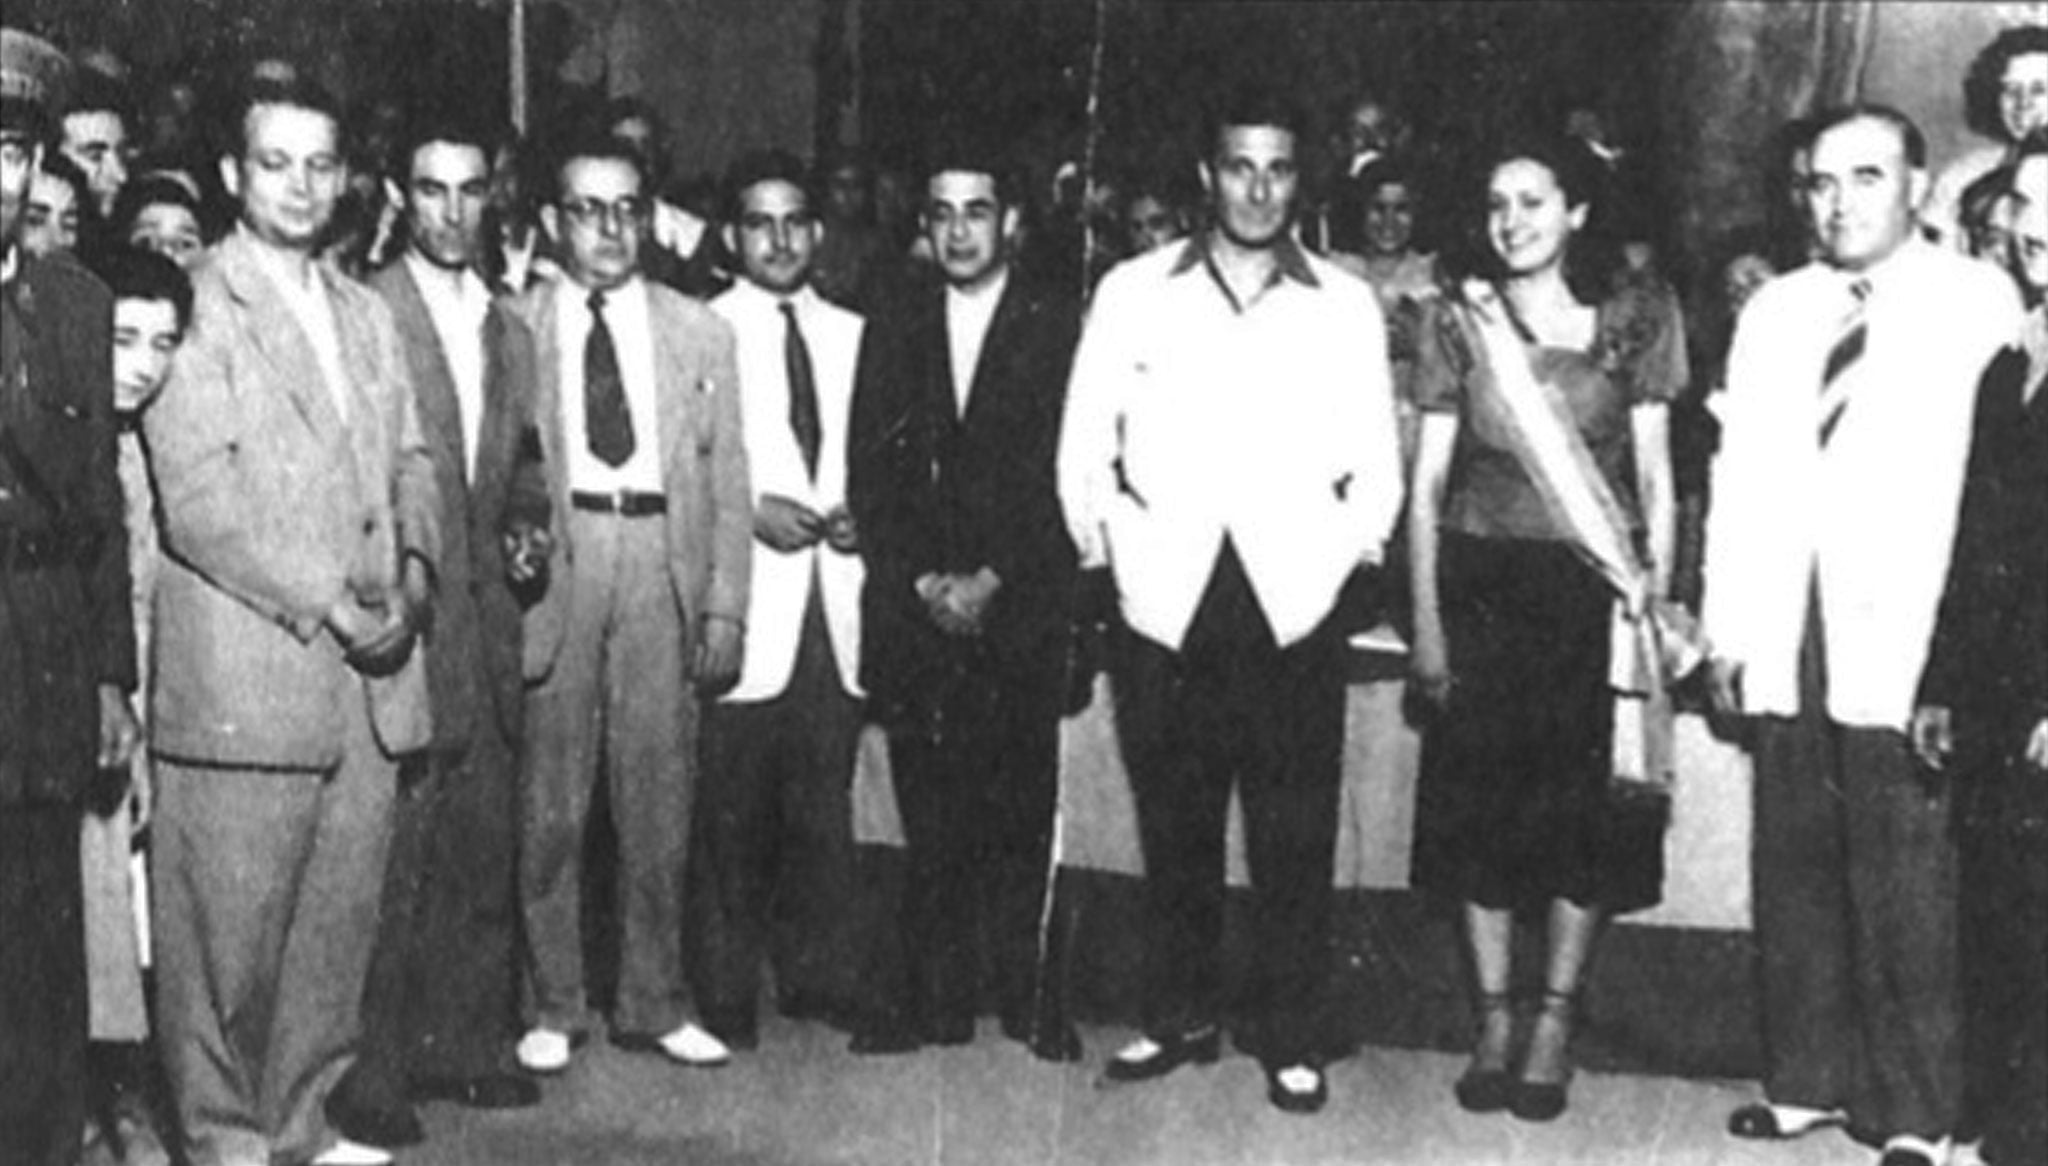 Imagen de la primera reina de las fiestas, Vicenta Bertomeu (1949). Extraída del artículo de Vicent Balaguer «La festa del 1901 al 1975» (Arxiu Municipal)